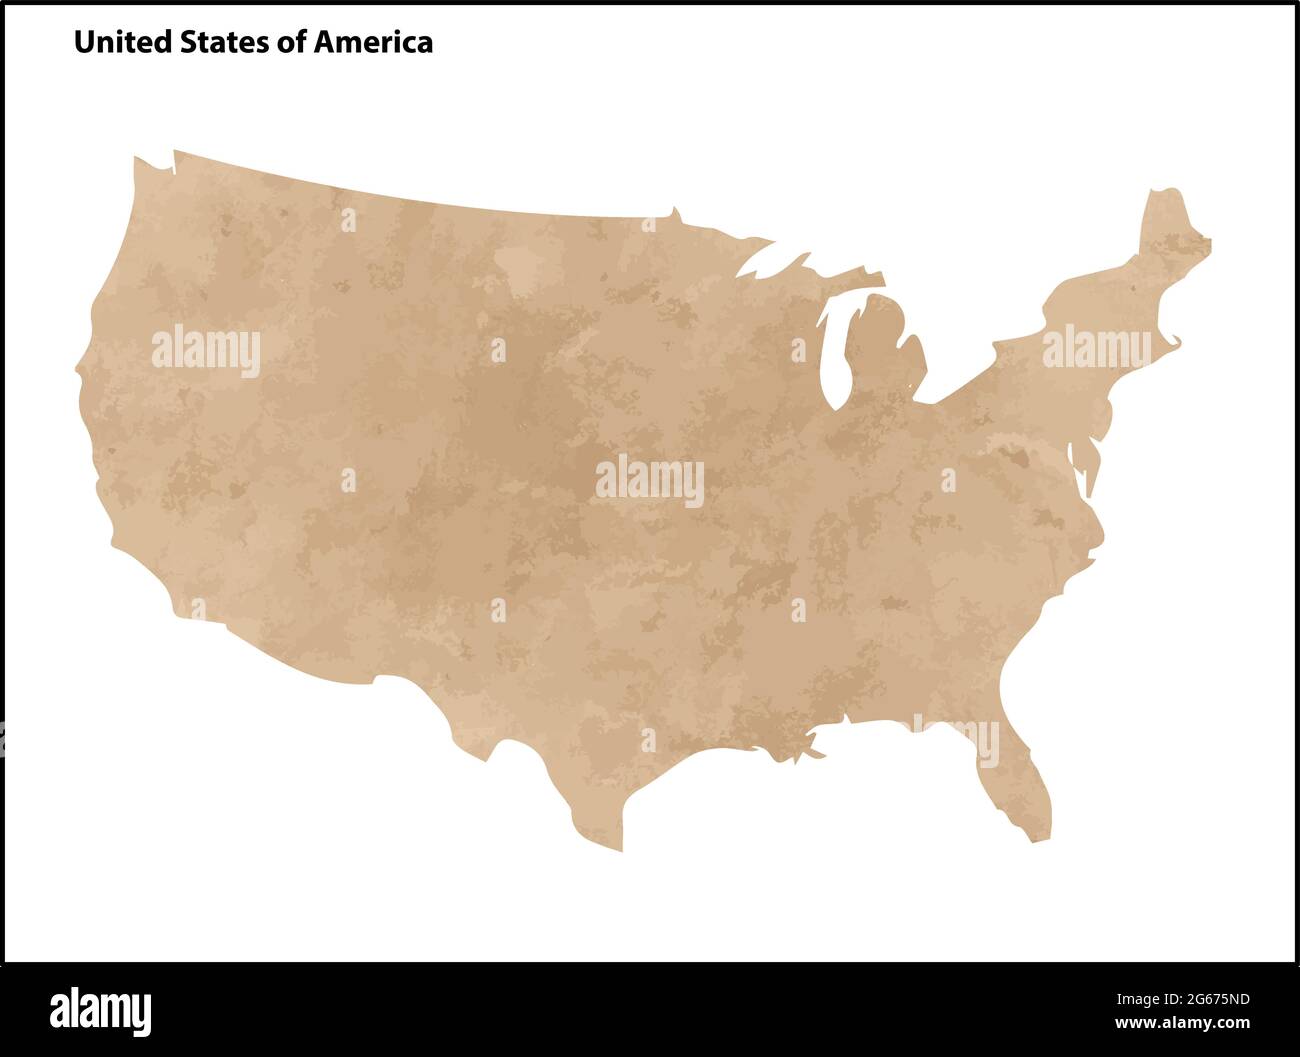 Alte Vintage Papier strukturierte Karte der USA oder der Vereinigten Staaten von Amerika Land - Vektor-Illustration Stock Vektor